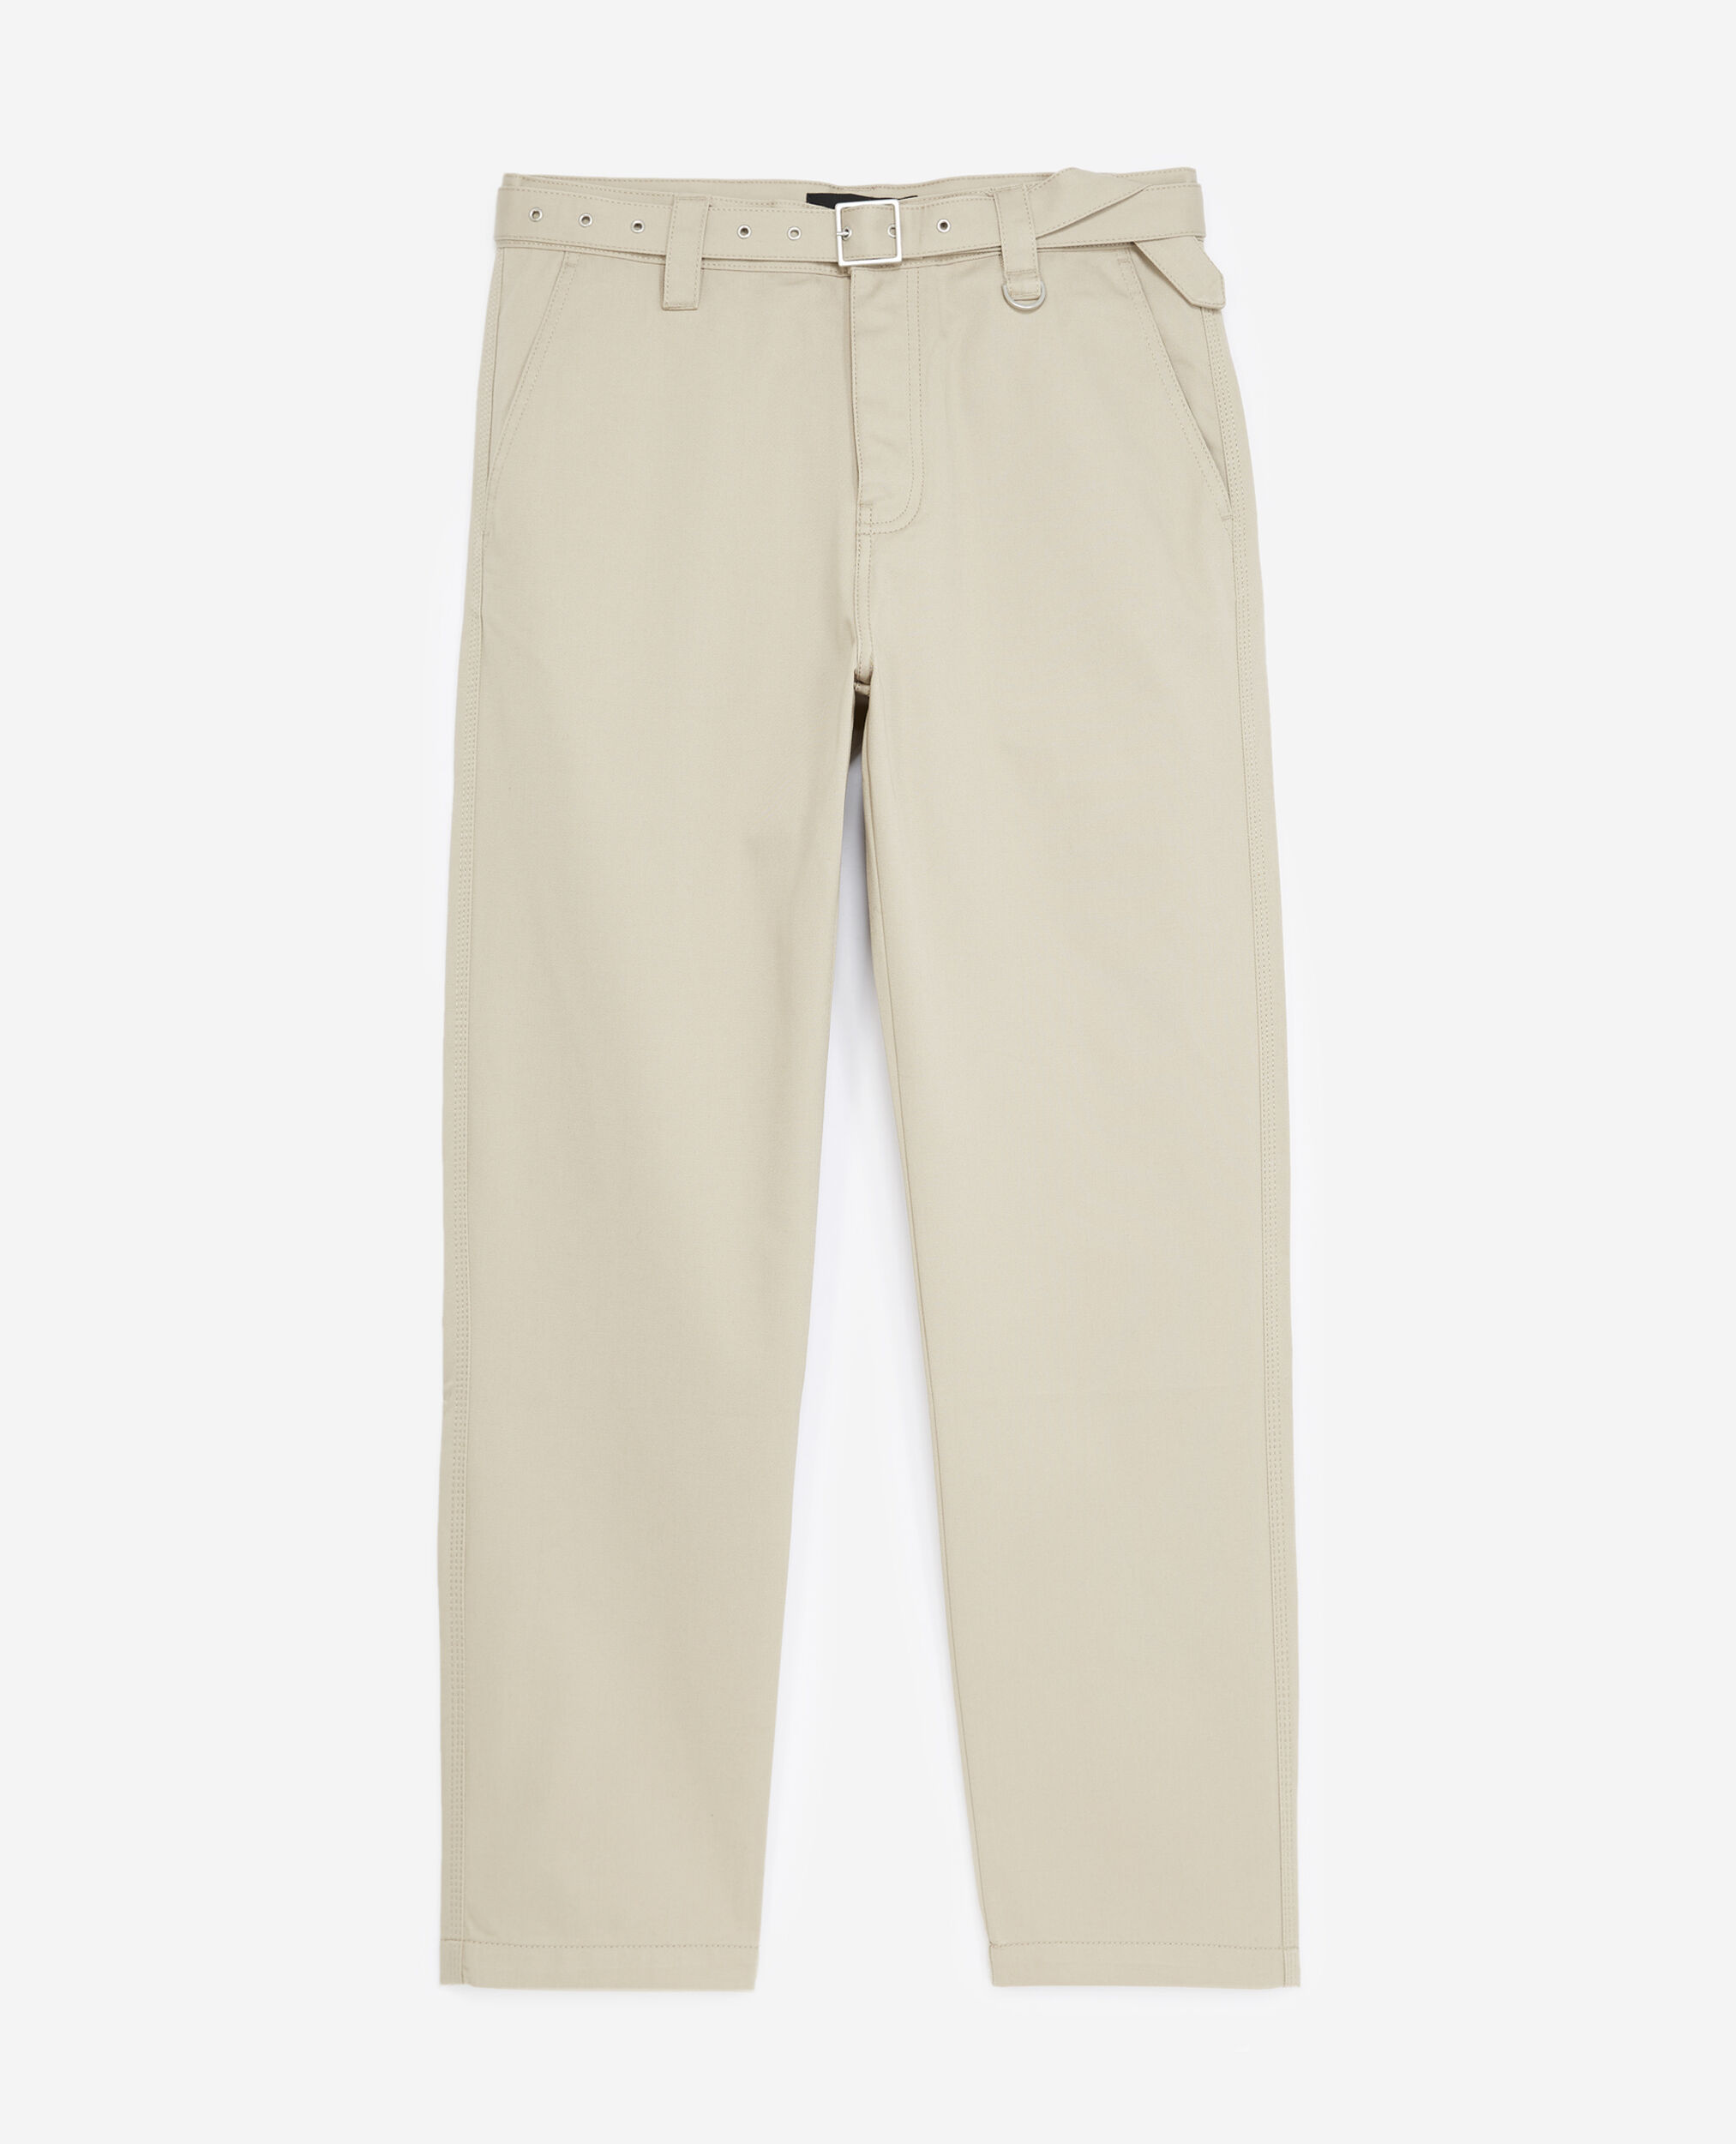 Pantalon coton beige à ceinture intégrée, BEIGE, hi-res image number null